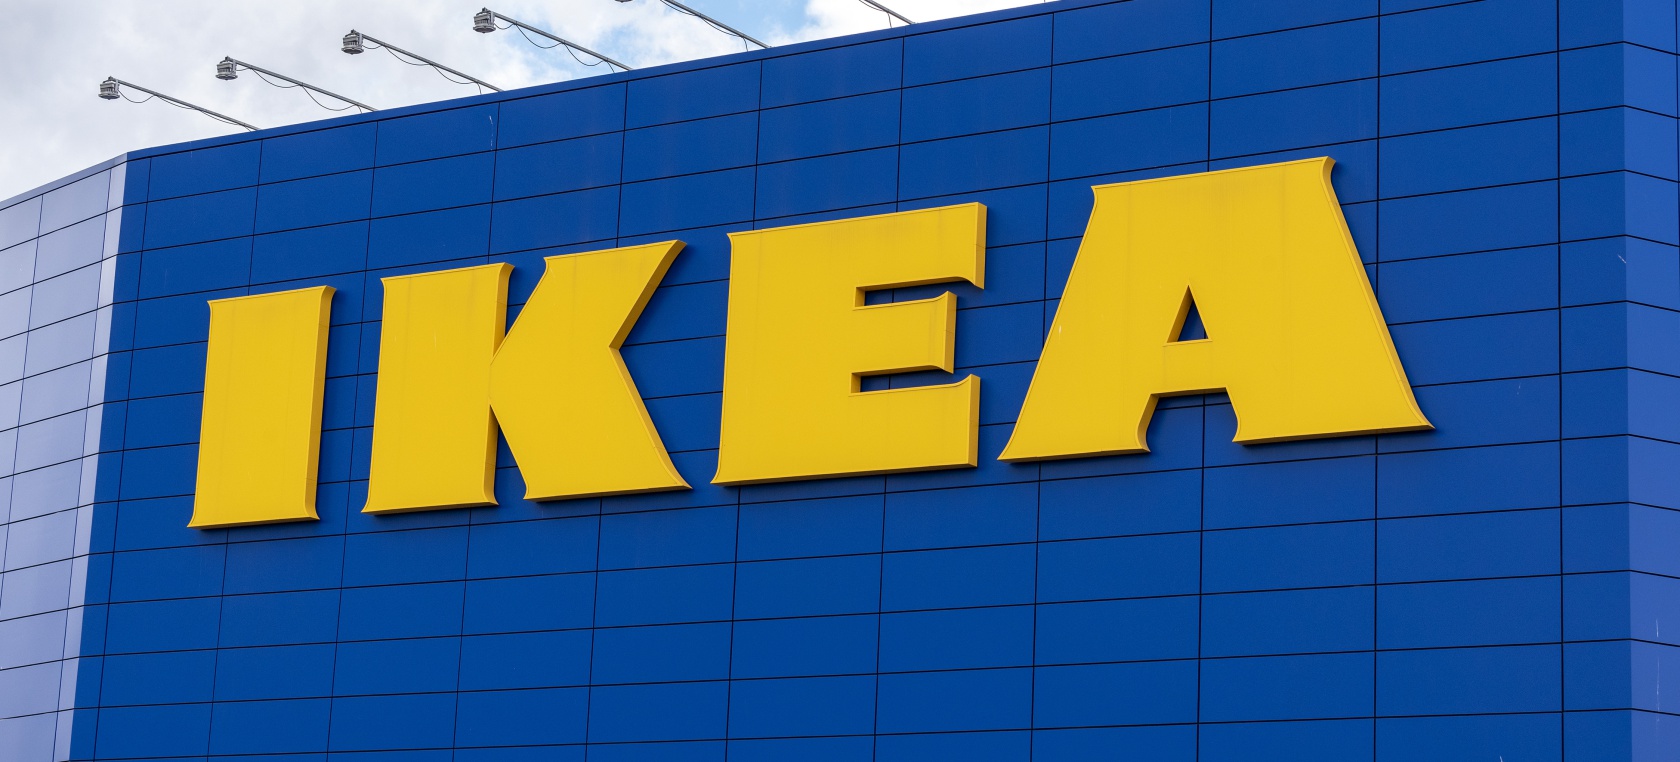 El curioso dato de Ikea Valladolid provoca las risas en Internet